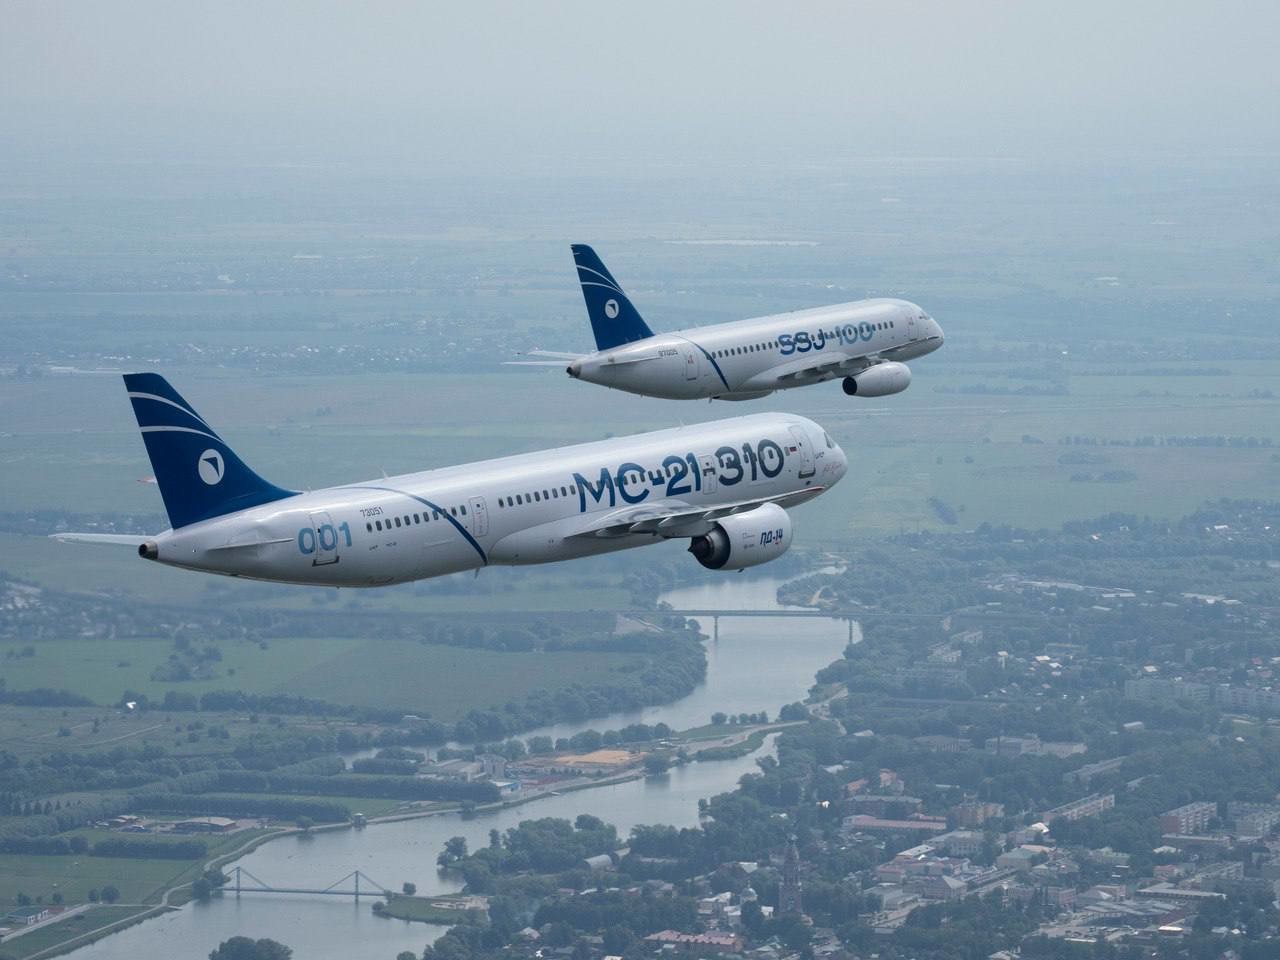 ОАК опубликовала снимки новых самолетов SJ-100 и МС-21